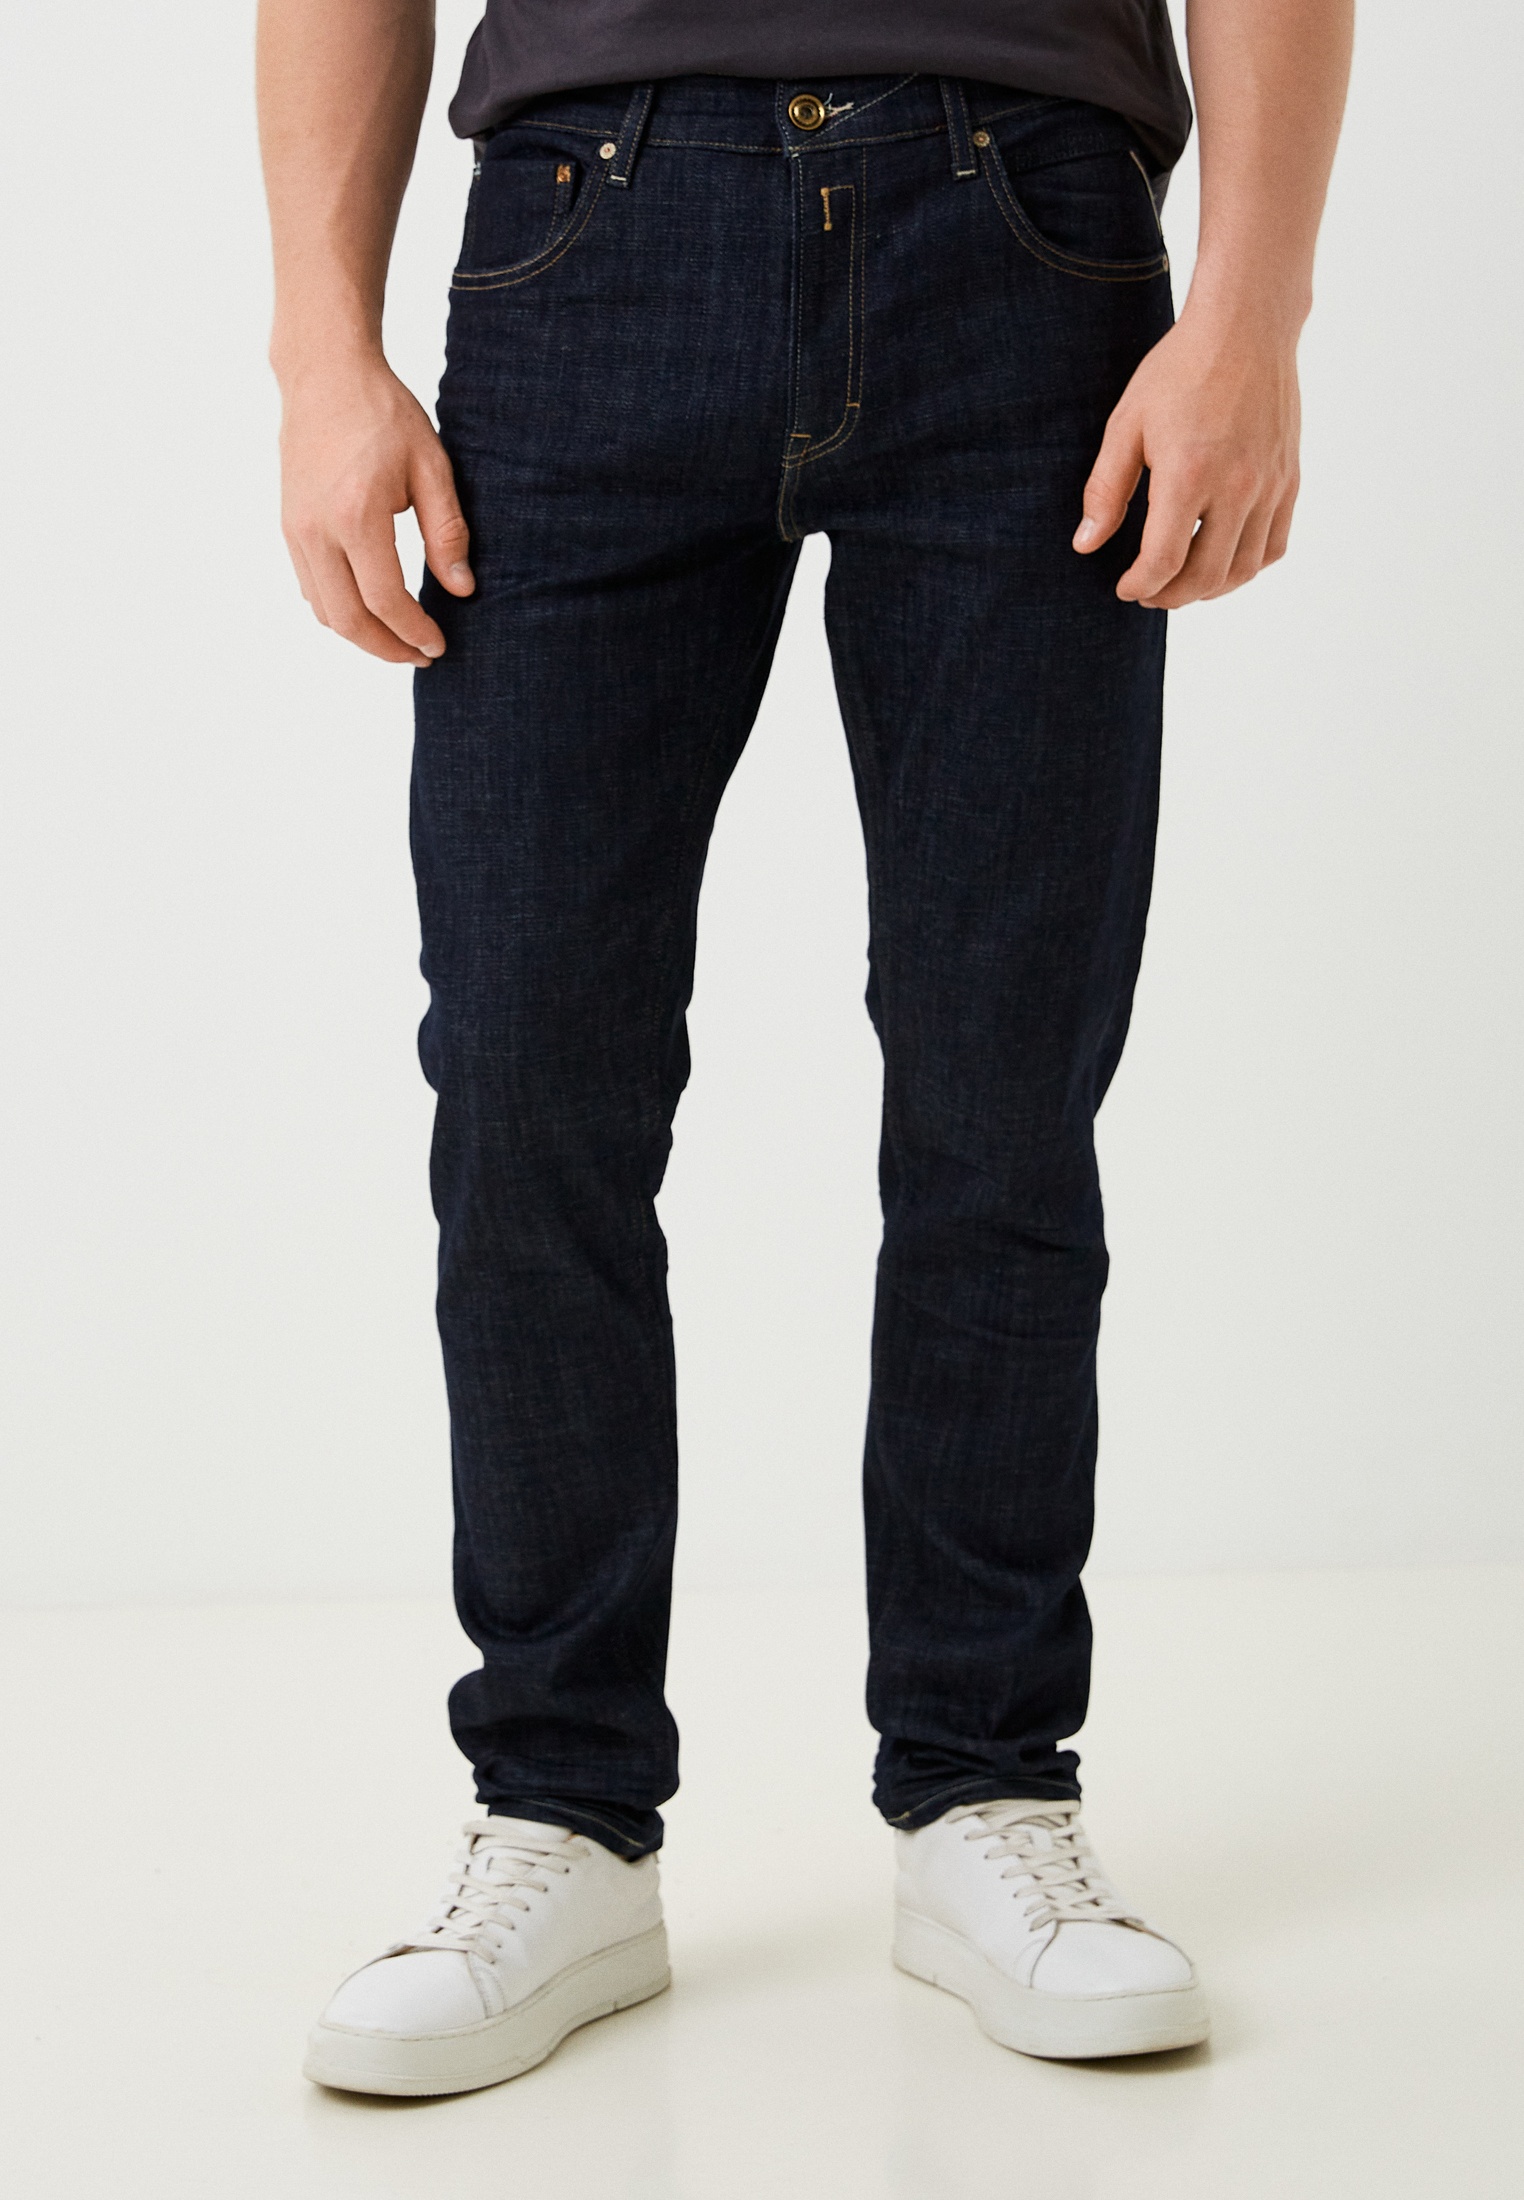 Мужские прямые джинсы Replay (Реплей) M1021Q.000.141 530